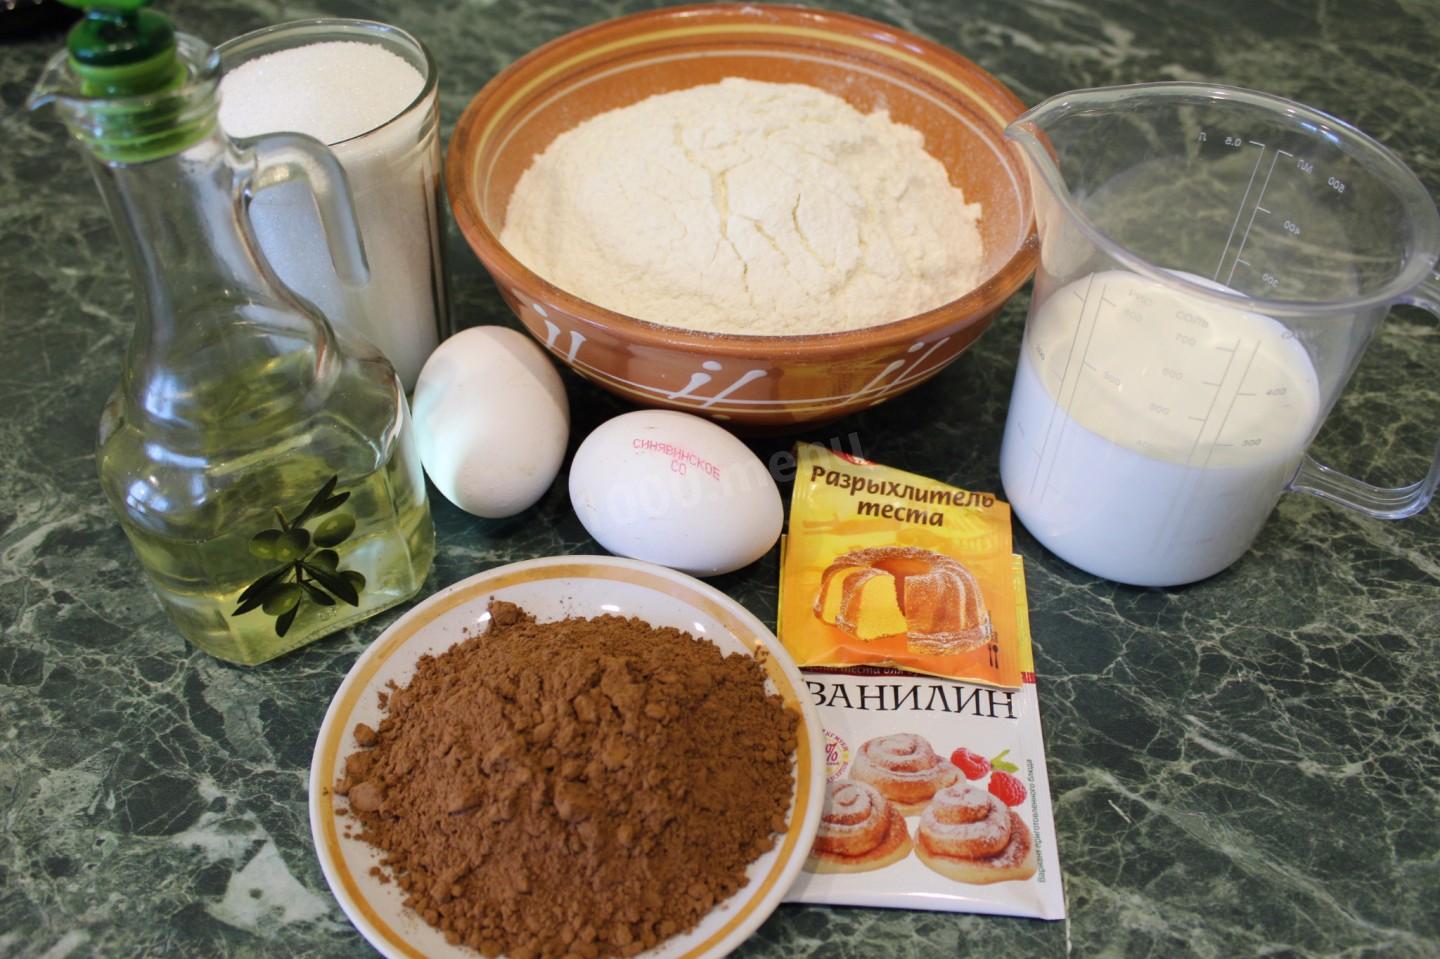 Сливочное масло и мука рецепты. Продукты для теста. Яичный порошок тесто. Какао сахар мука молоко масло. Фото мука сливки для торта.